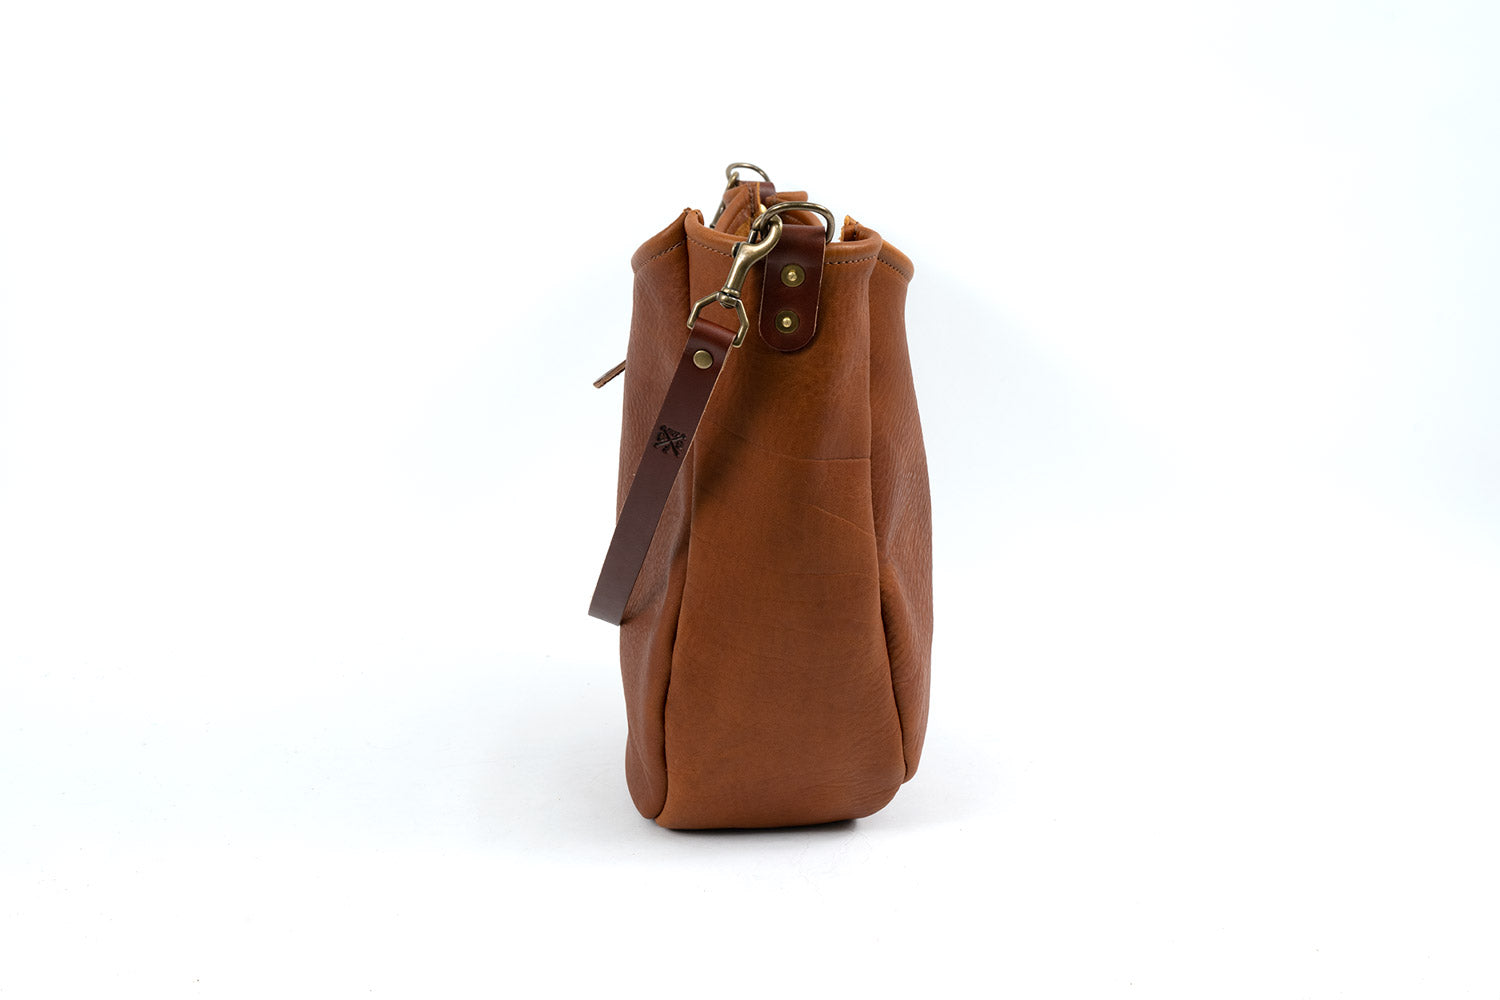 Celeste Leather Hobo Bag - Large - Peanut Bison - Go Forth Goods ®